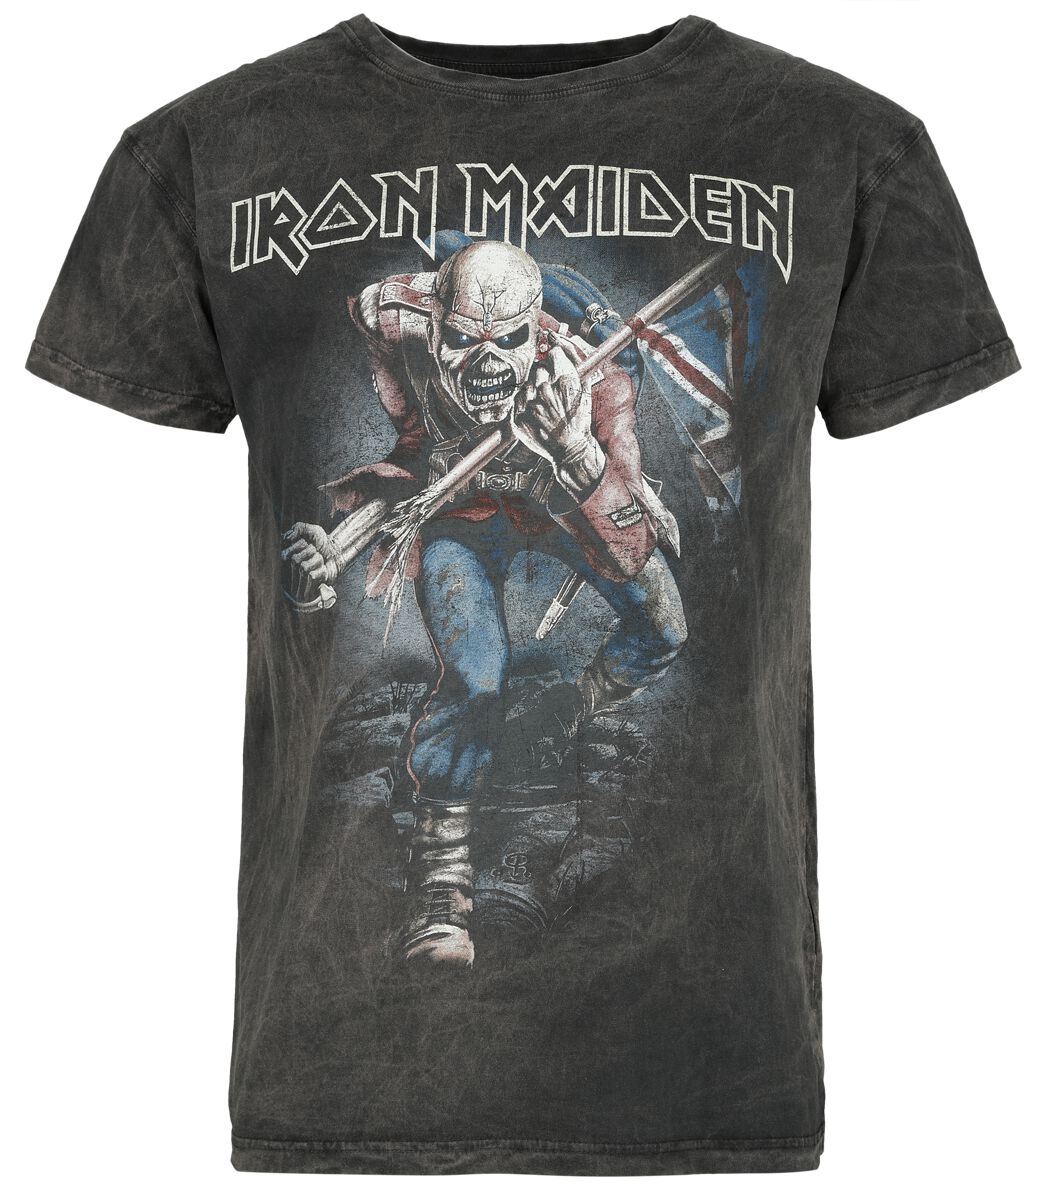 Iron Maiden T-Shirt - The Trooper - S bis 4XL - für Männer - Größe 4XL - grau  - Lizenziertes Merchandise!